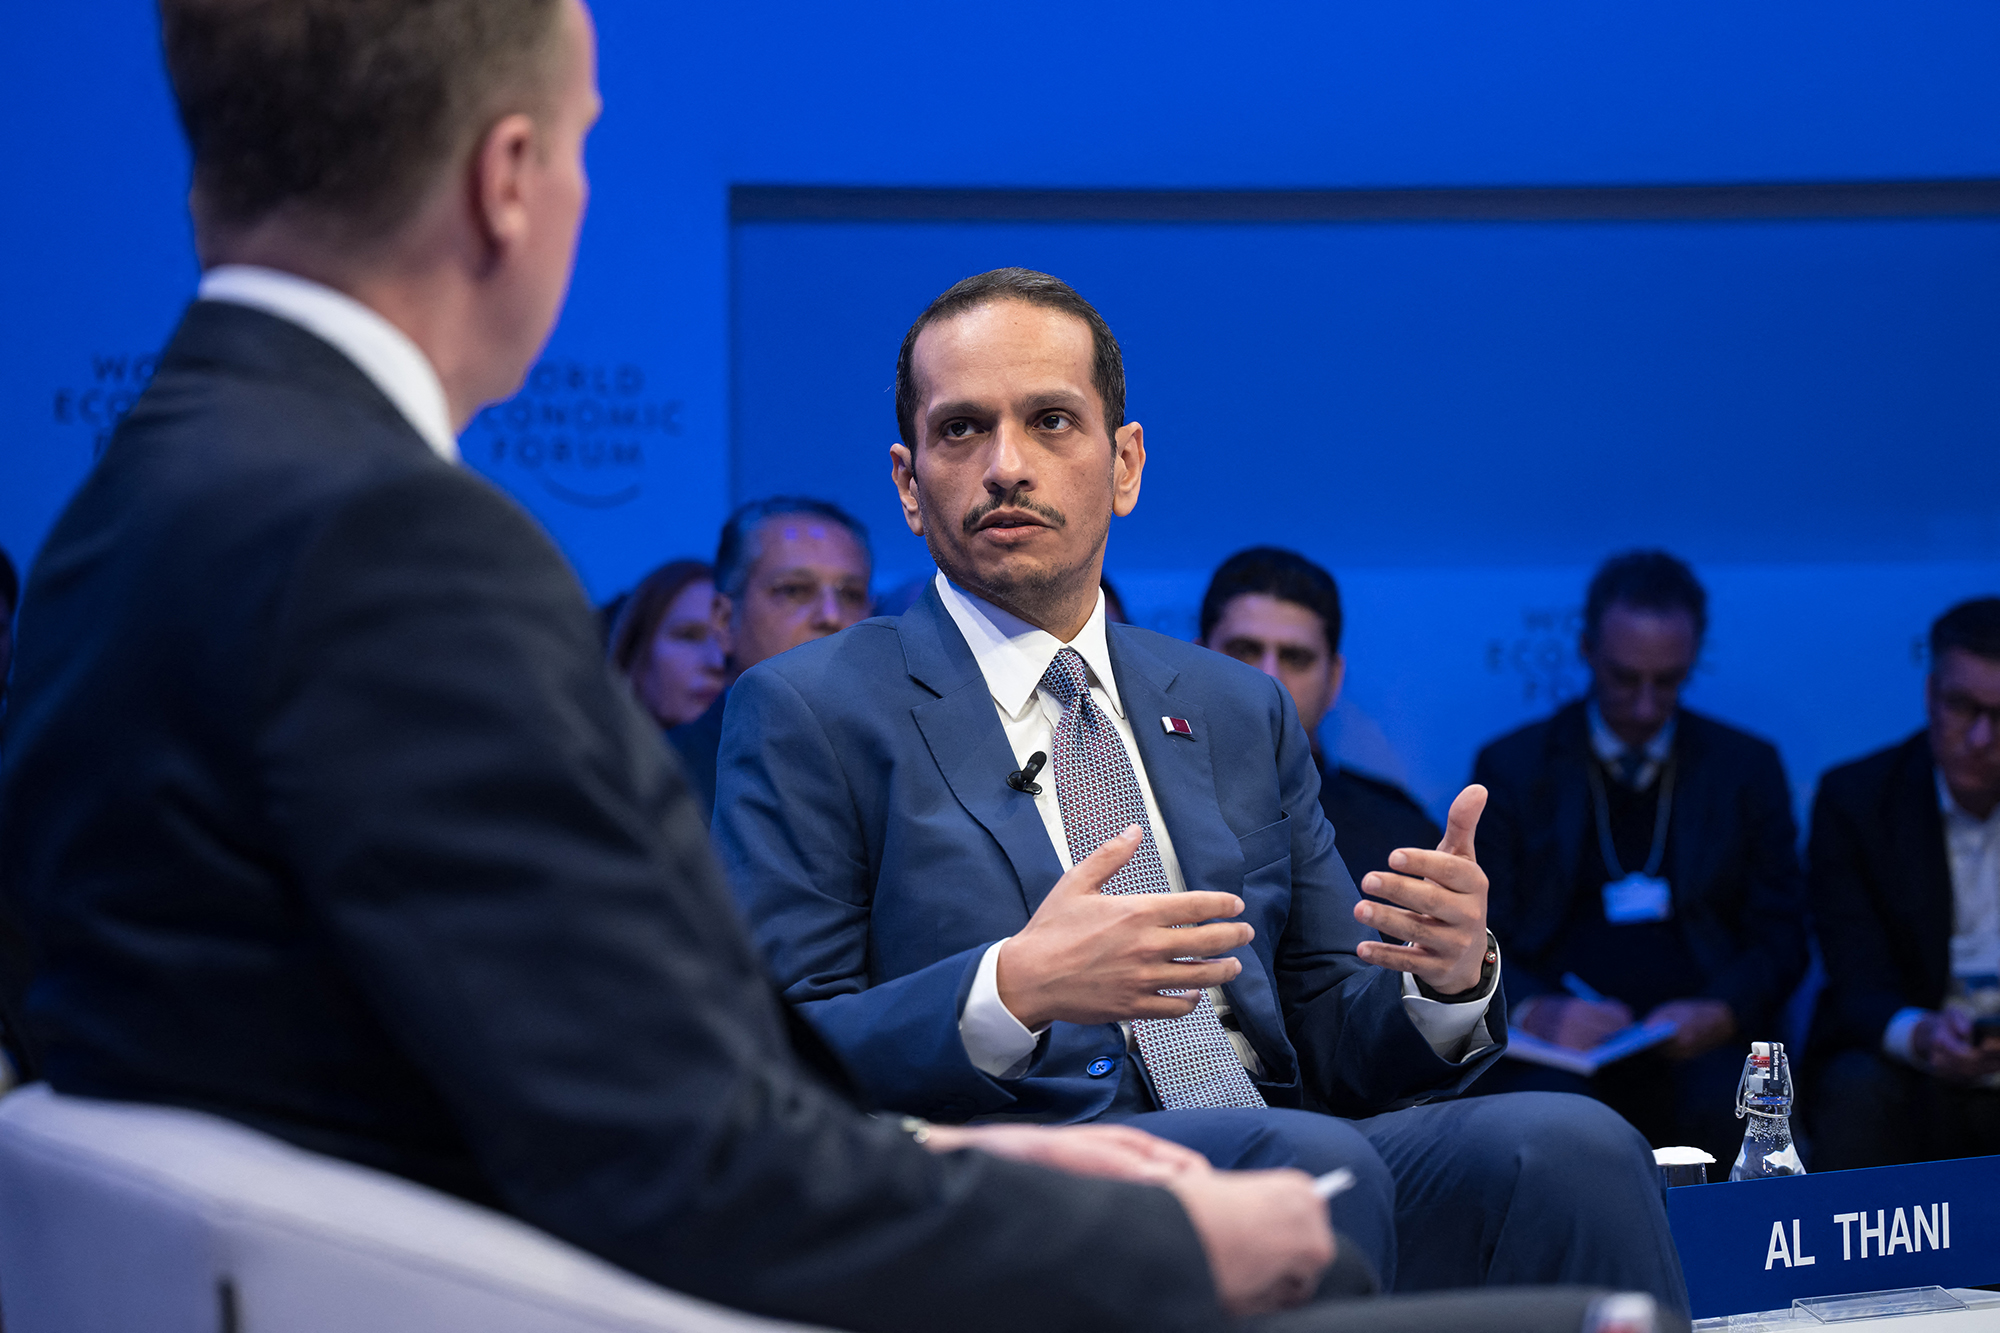 El Primer Ministro y Ministro de Relaciones Exteriores de Qatar, Jeque Mohammed bin Abdulrahman al-Thani (derecha), habla con el presidente del FEM, Borge Brende, durante una sesión de la reunión anual del Foro Económico Mundial (FEM) en Davos, Suiza, el 16 de enero.